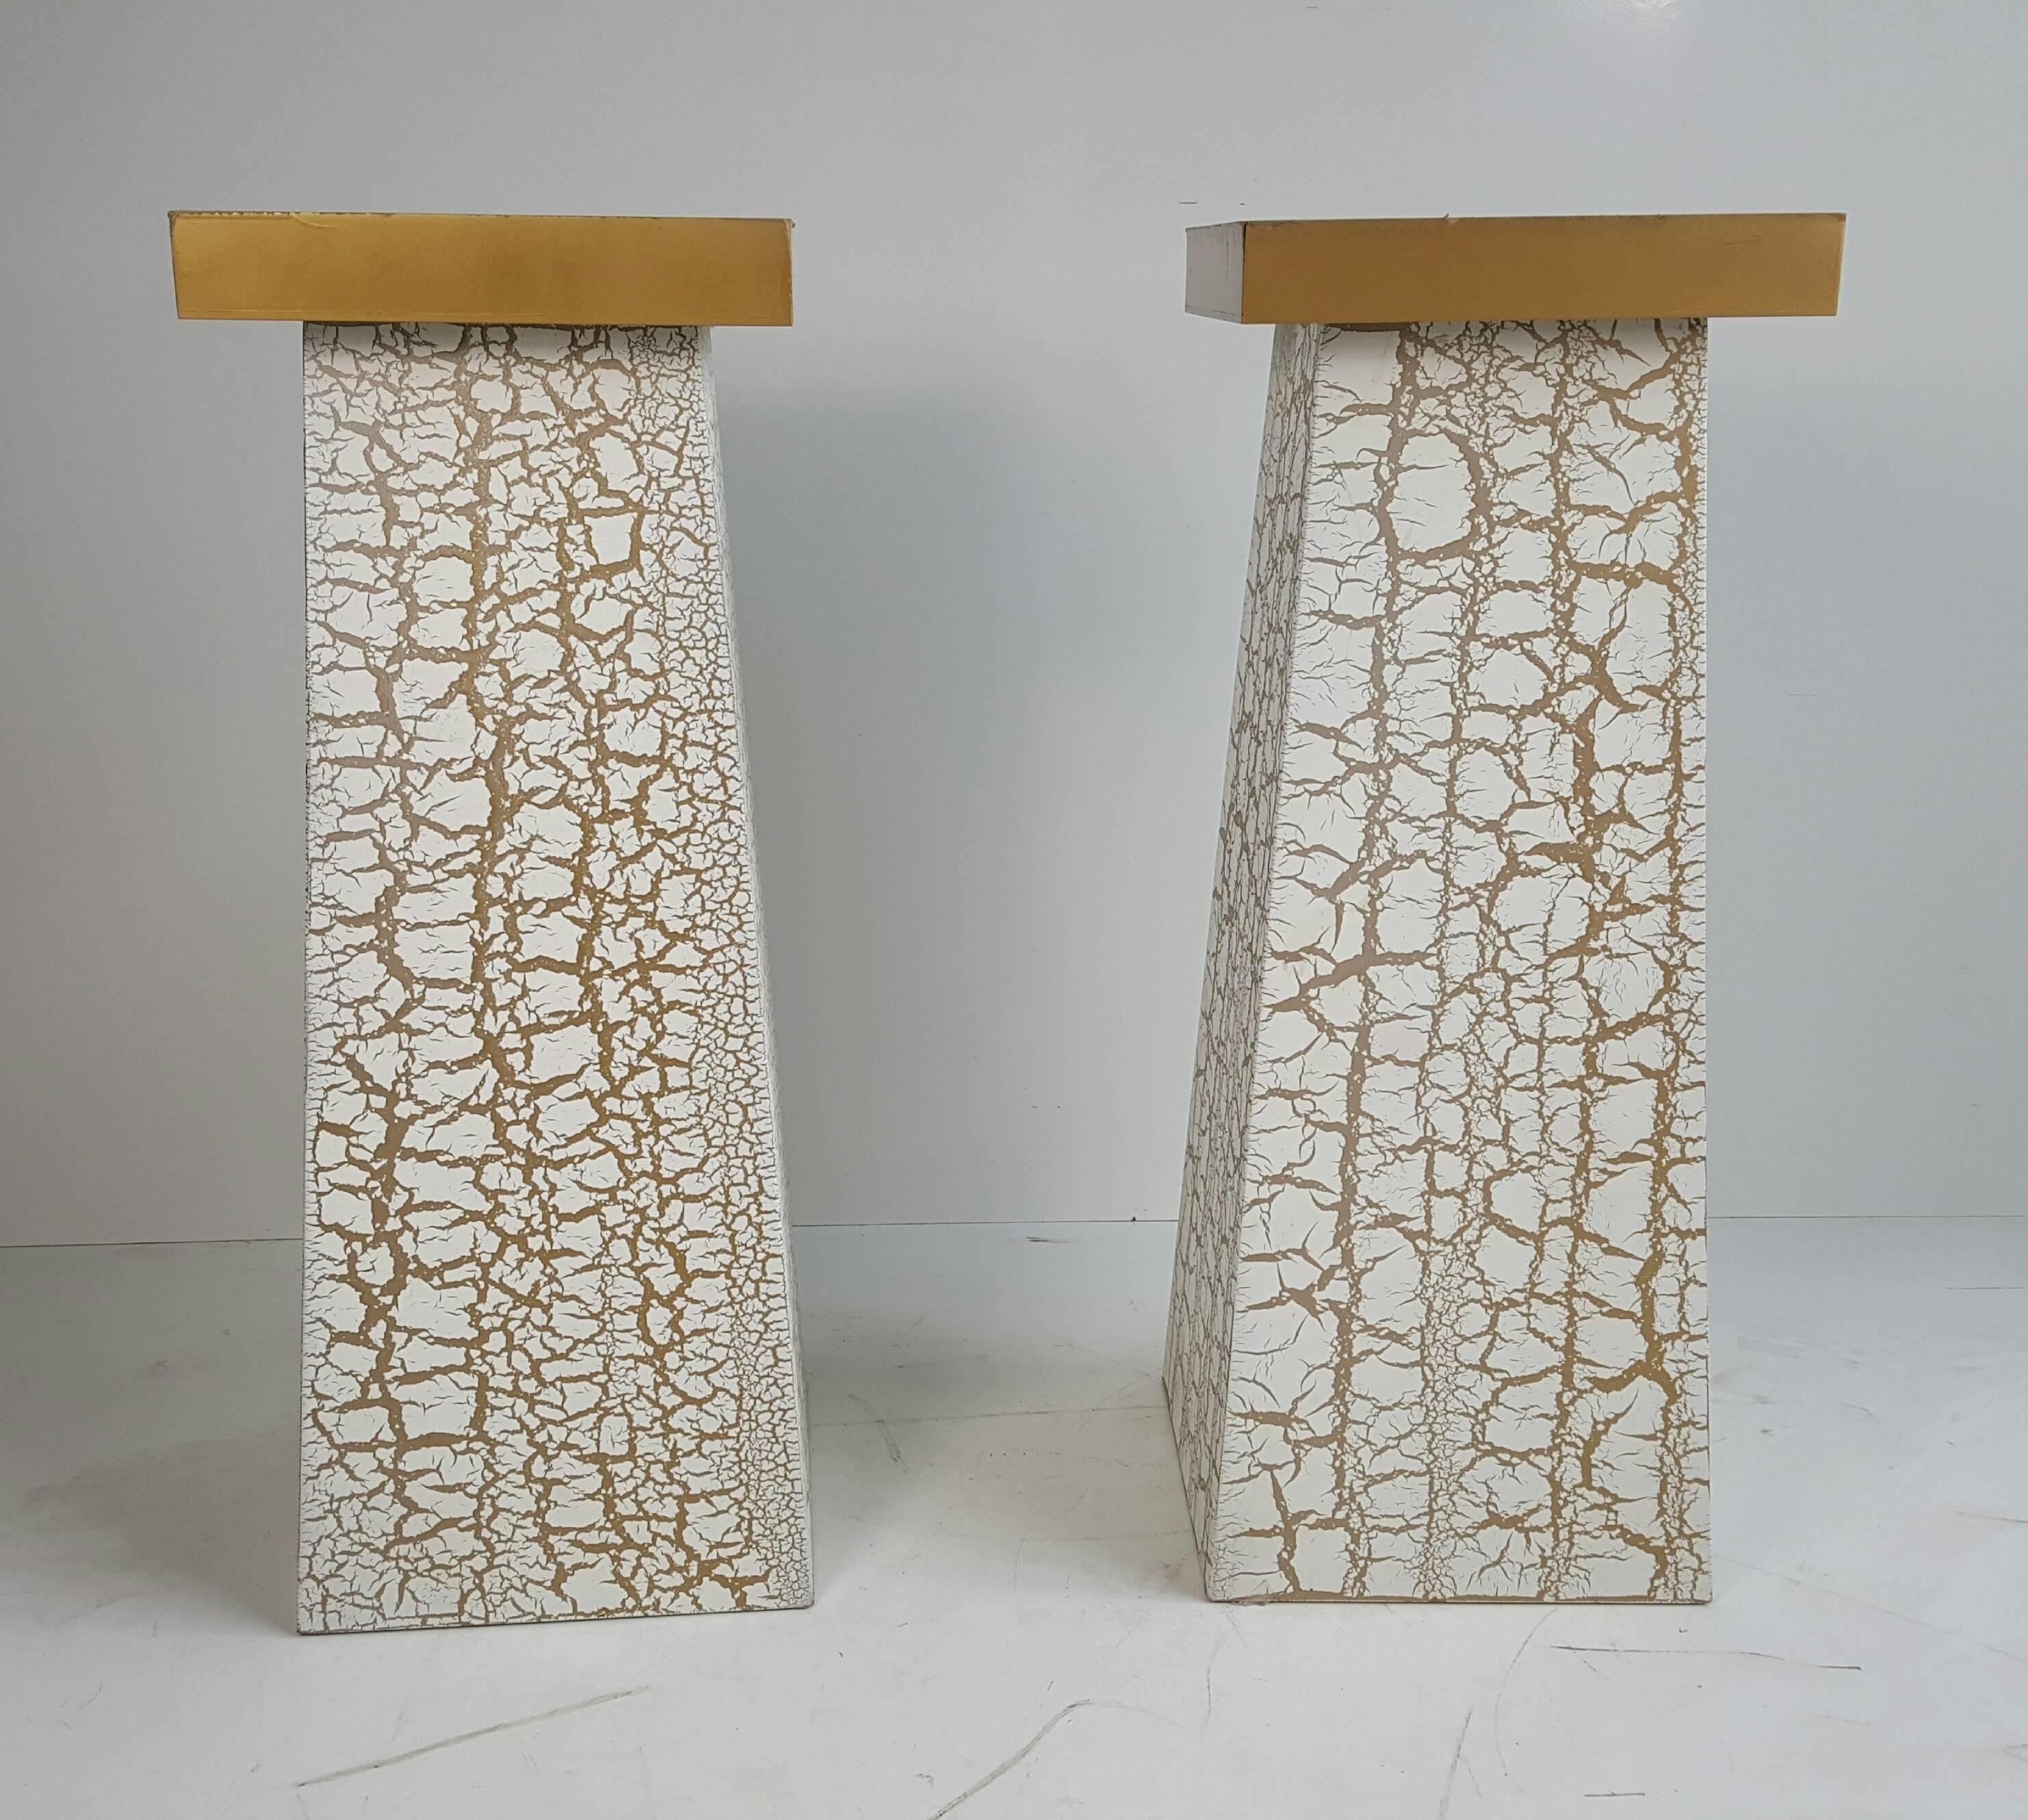 American Modernist Crackle Finish Plant Stands / Pedestals